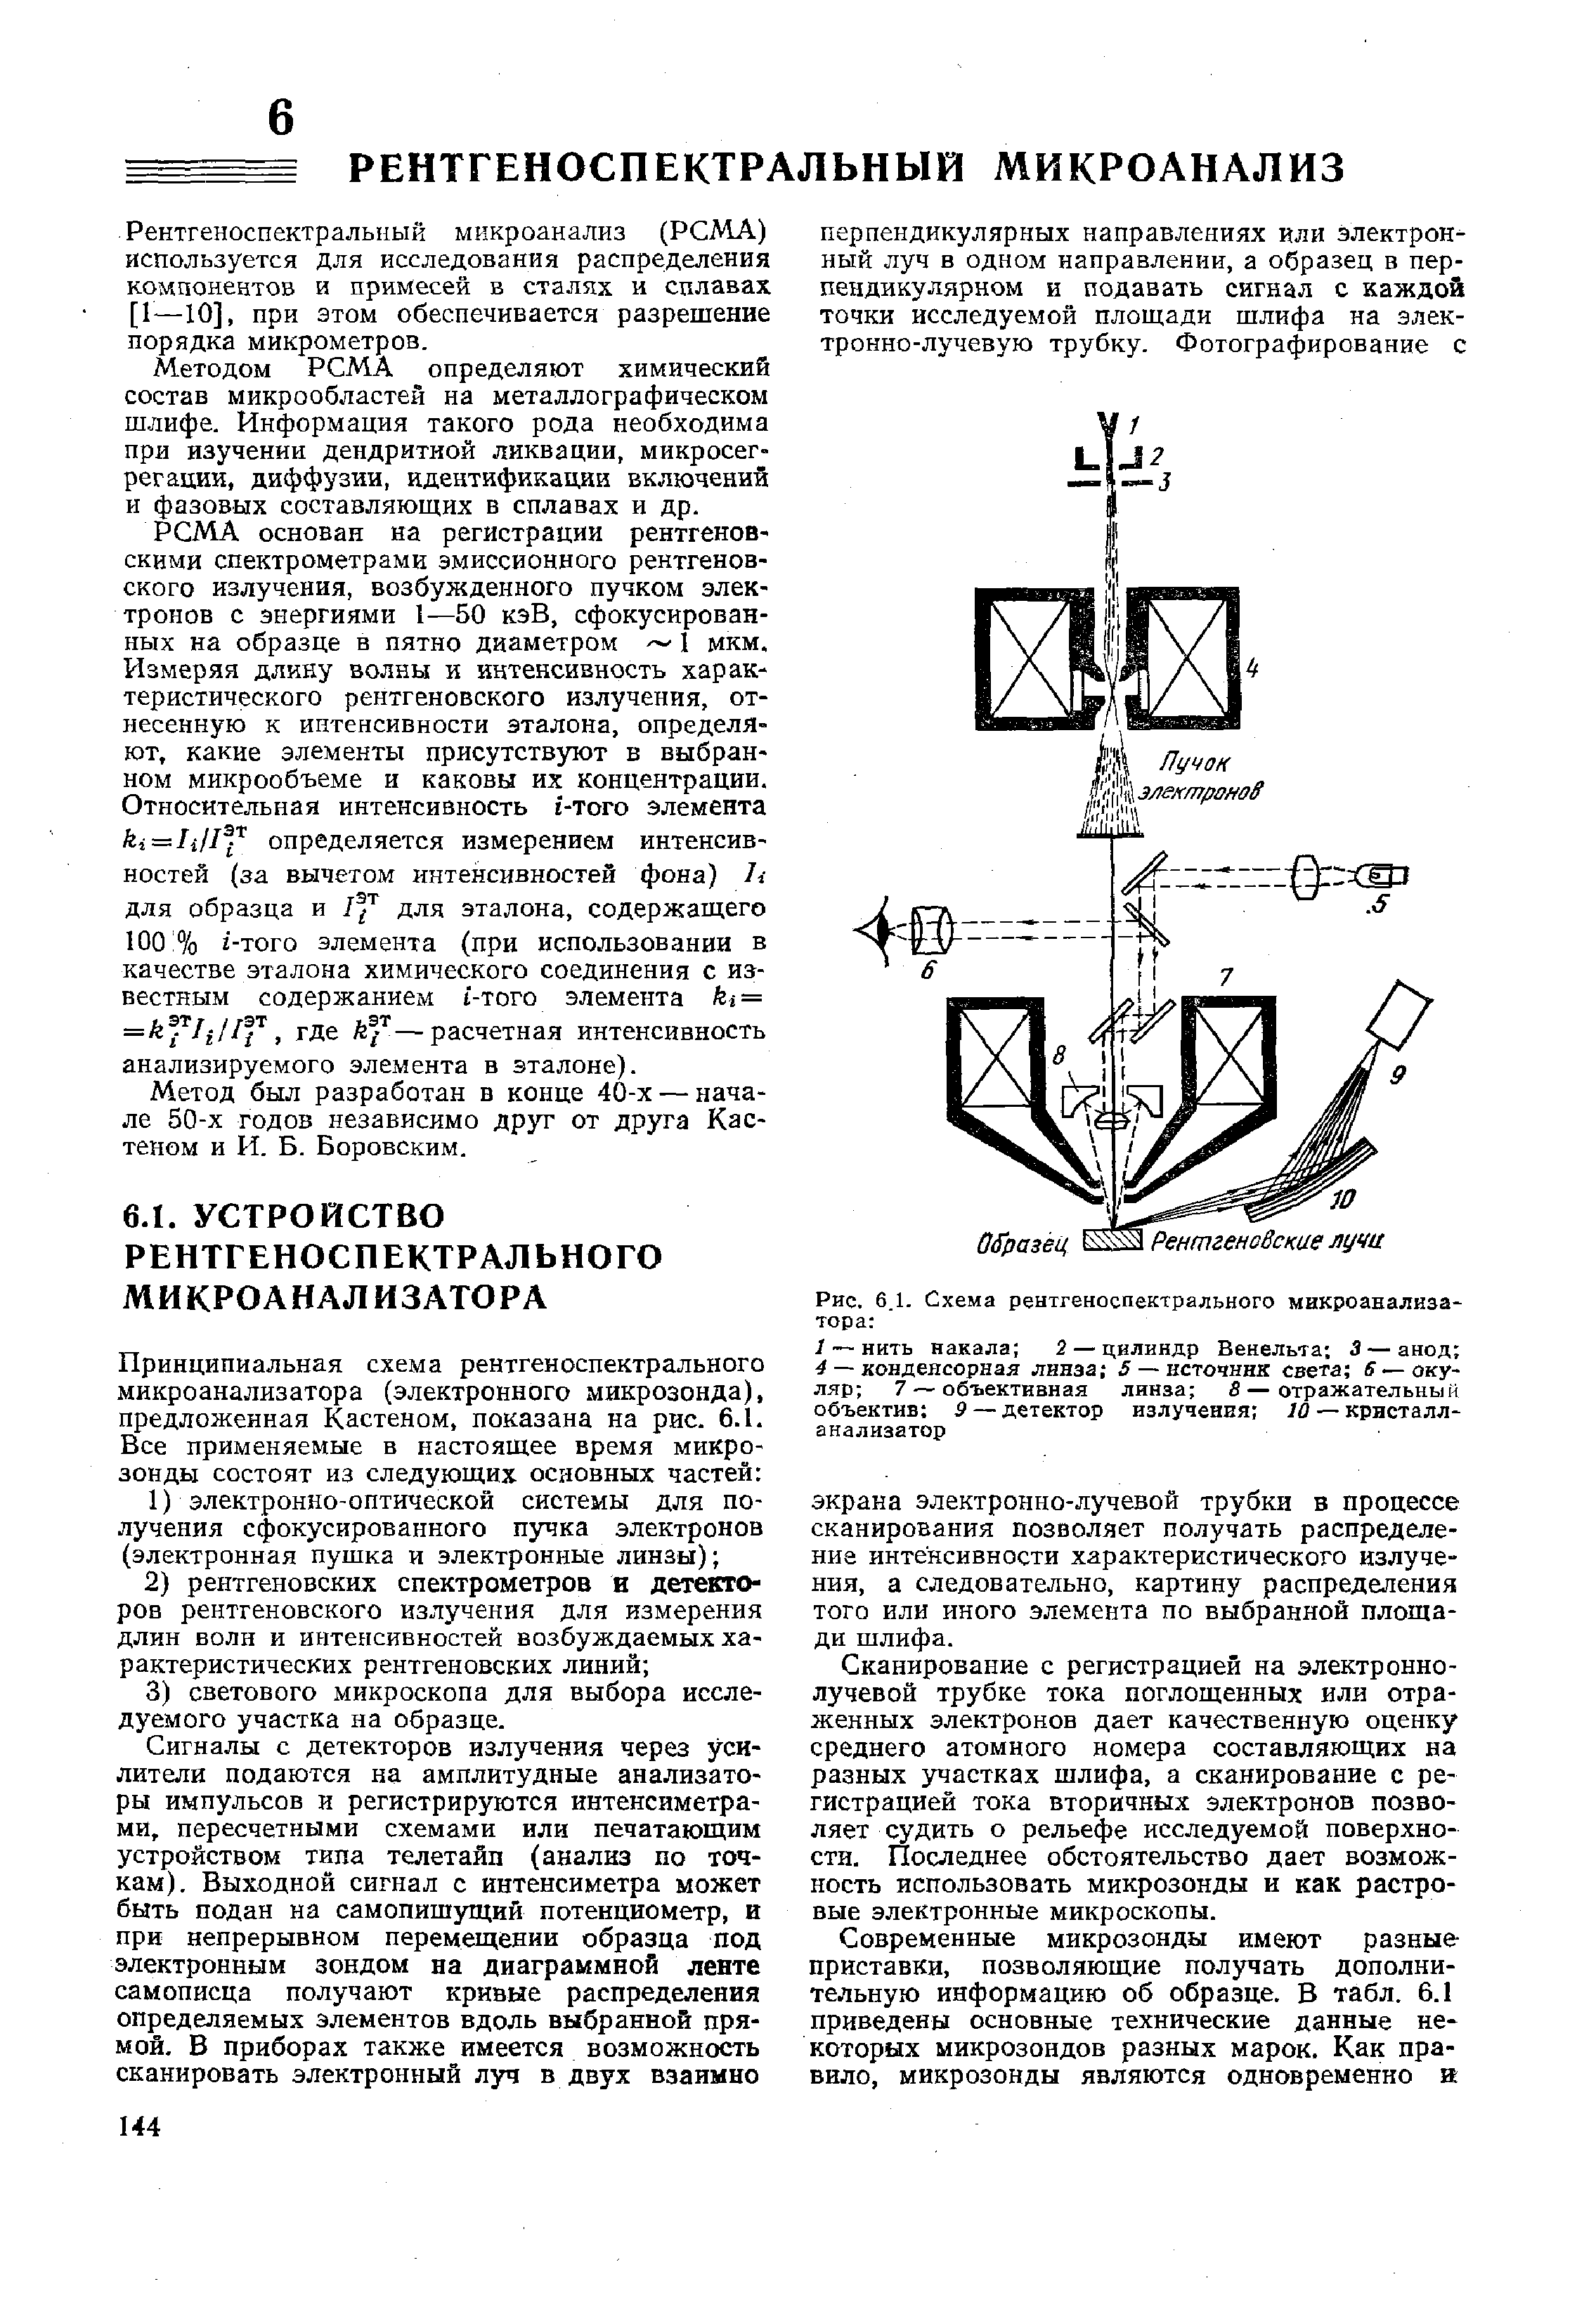 Рис. 6.1. Схема рентгеноспектрального микроанализатора 
